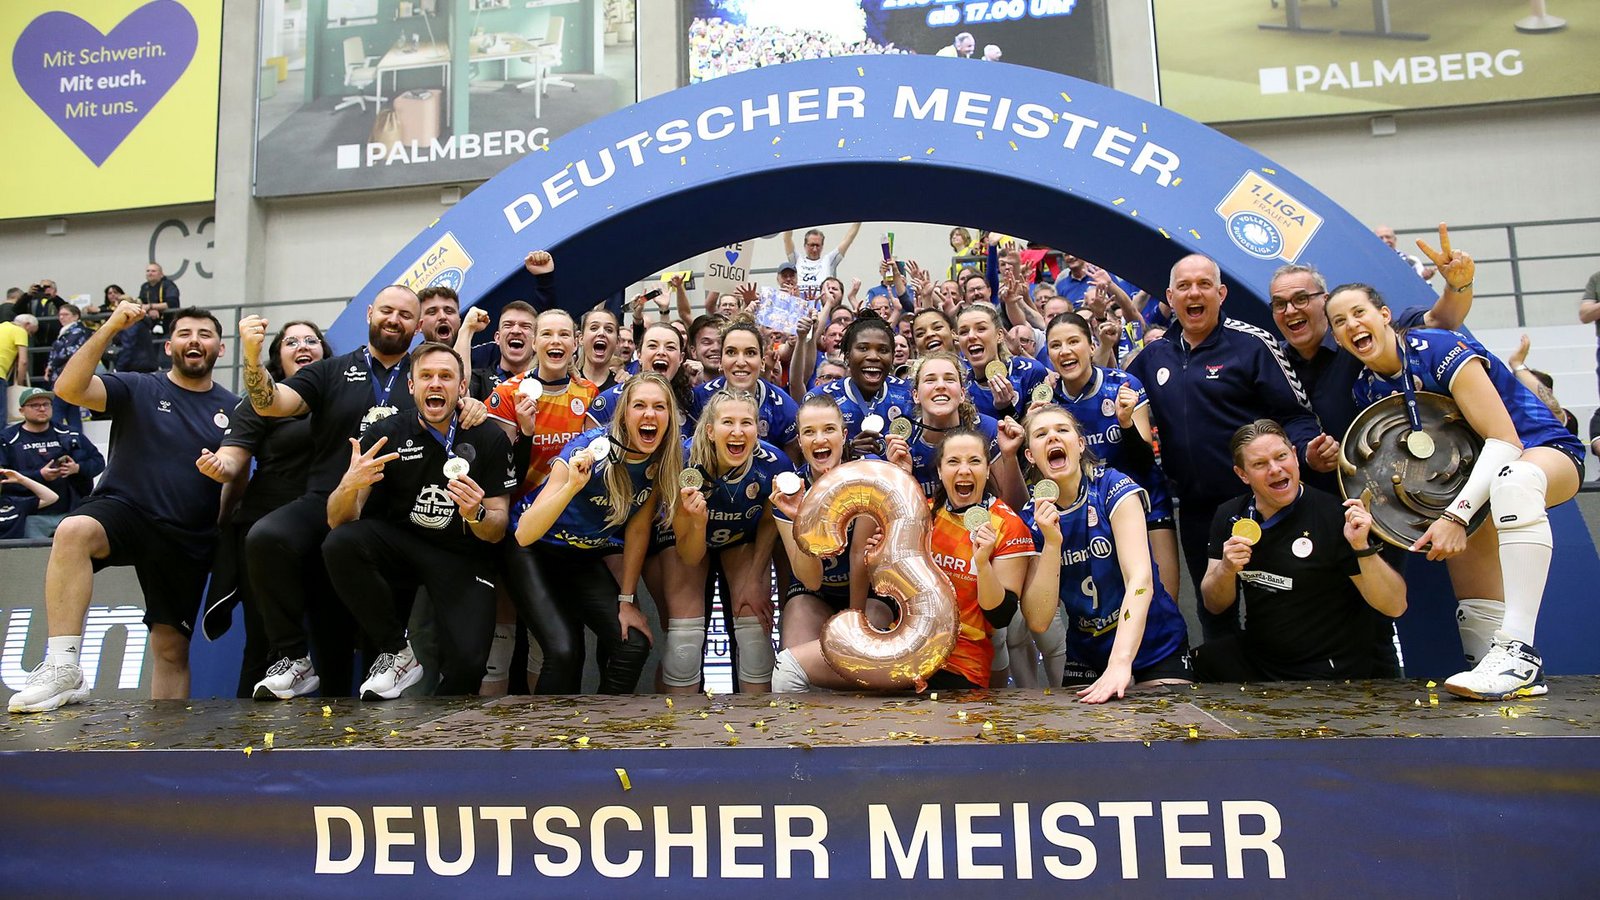 Die Spielerinnen von Allianz feiern ihre dritte deutsche Meisterschaft nacheinander ausgelassen.Foto: Baumann